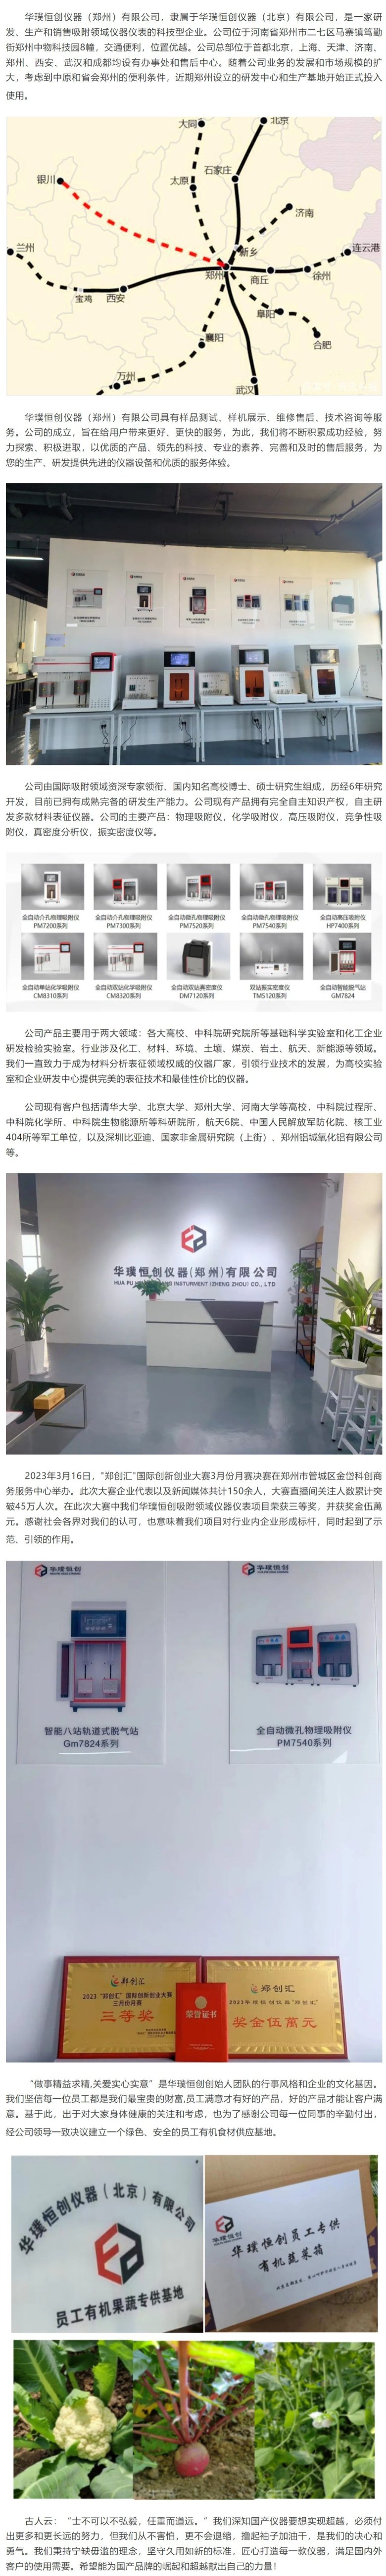 华璞恒创仪器（郑州）研发中心和生产基地正式投入使用.jpeg